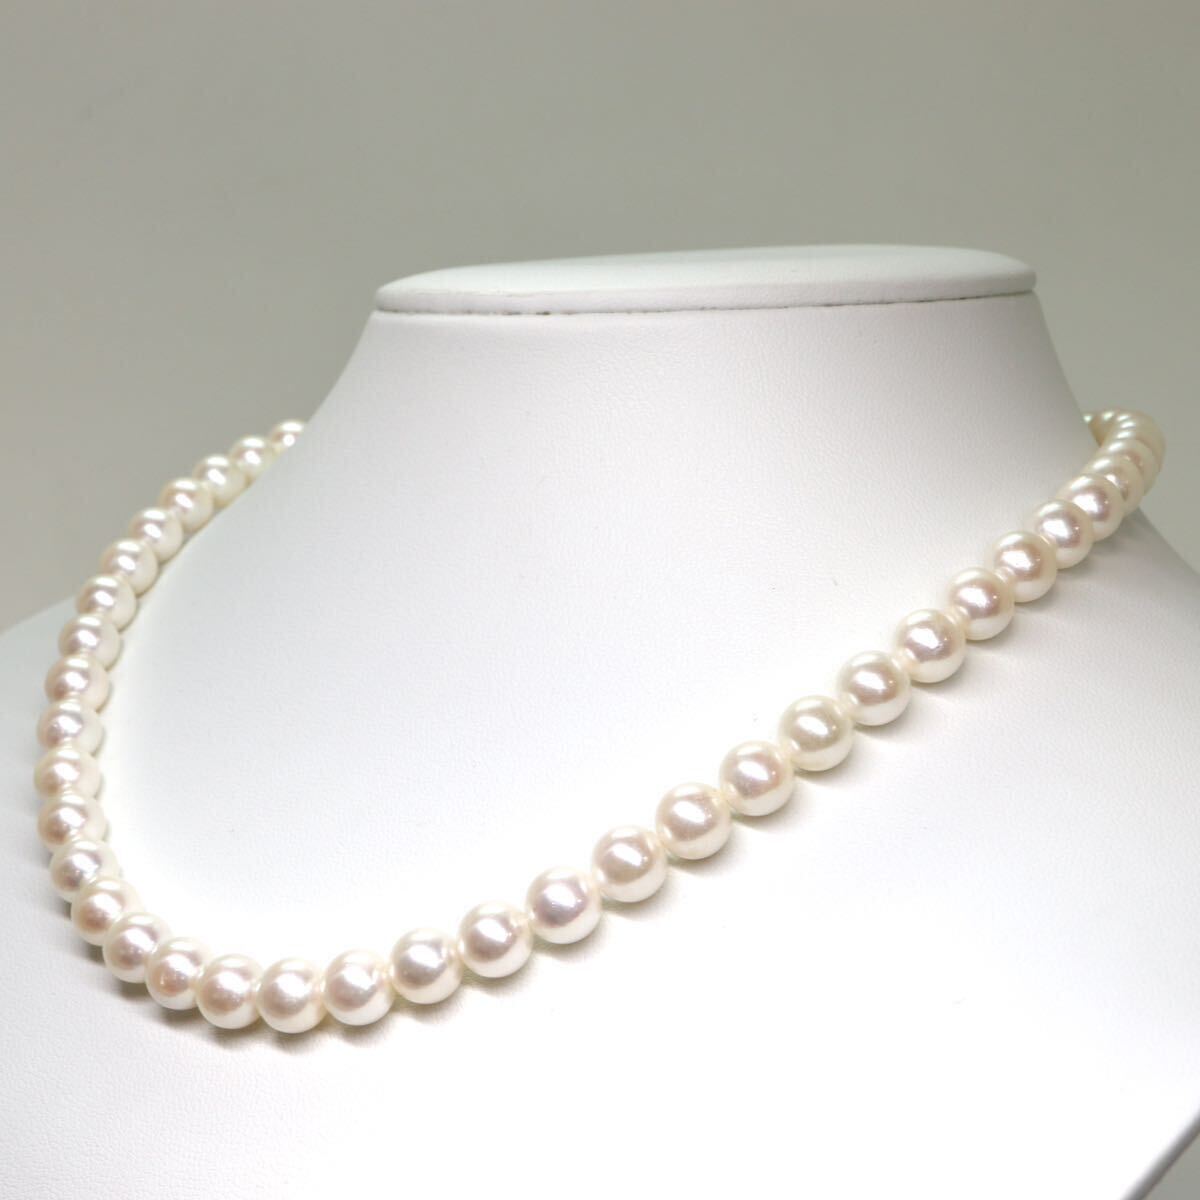 《本真珠ネックレス》A 約7.5-8.0mm珠 38.1g 約42cm pearl necklace ジュエリー jewelry EA0/EA0の画像3